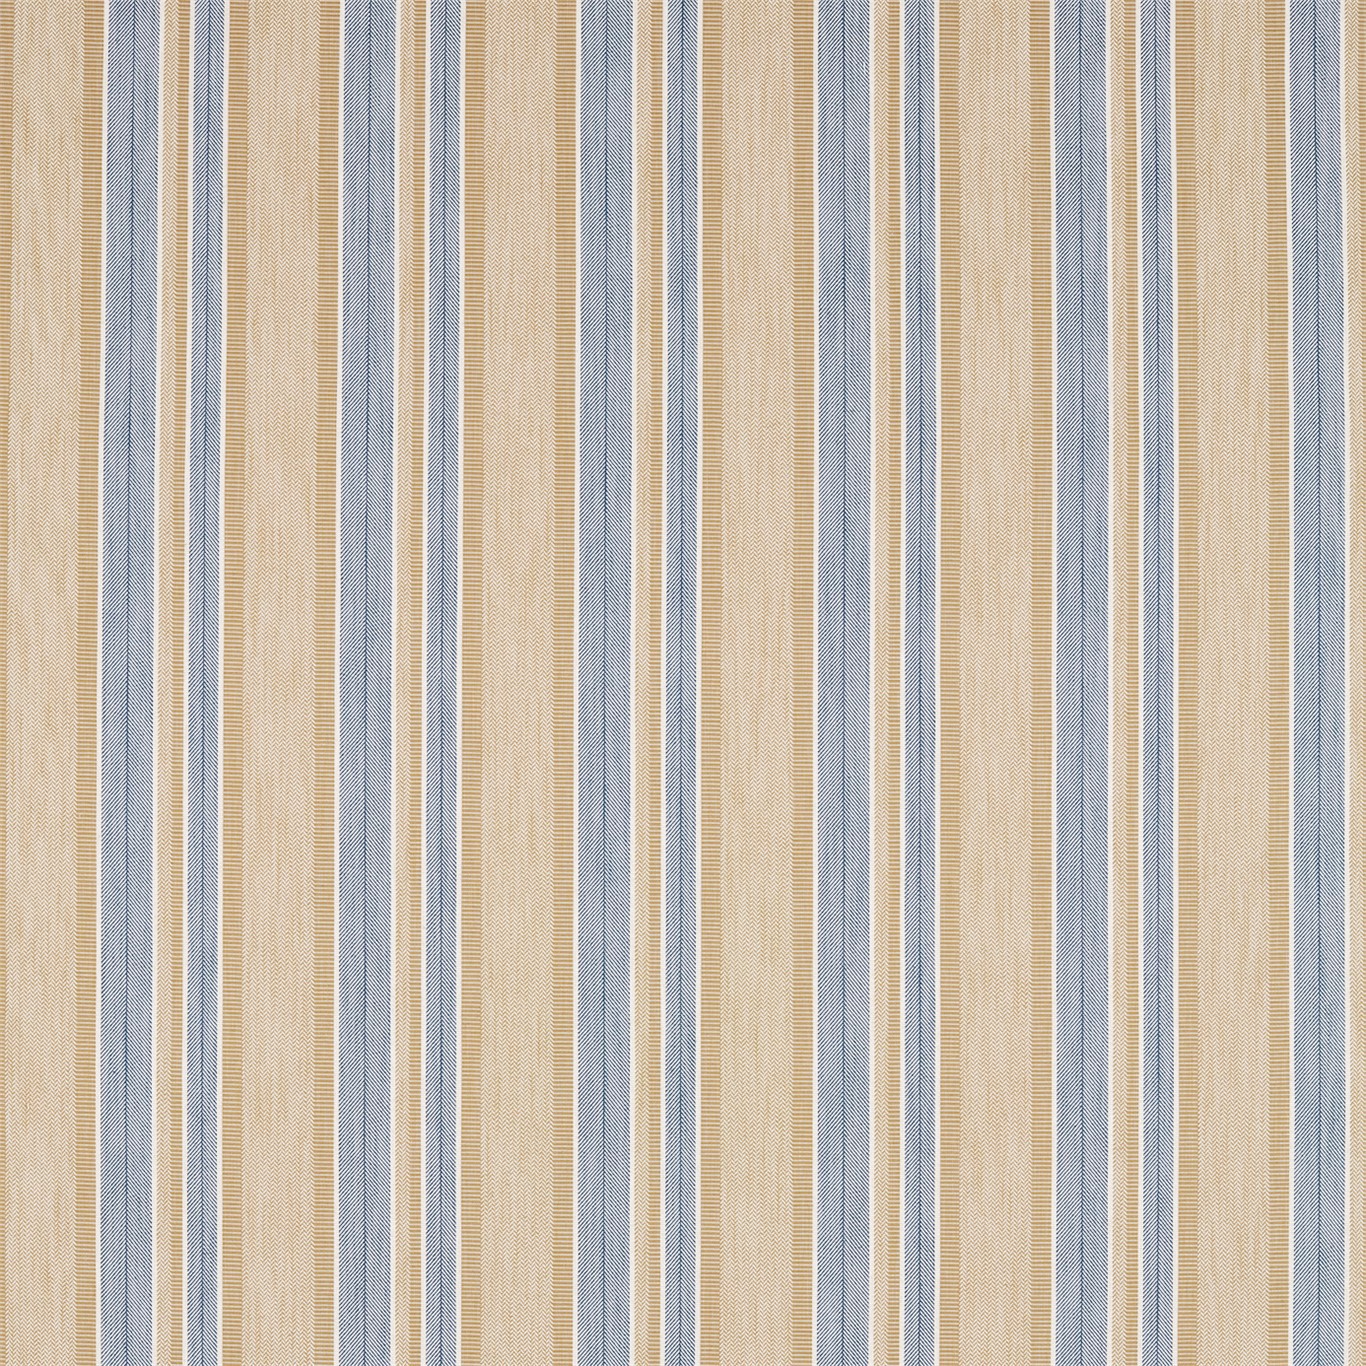 Alcott Denim/Barley Fabric by SAN